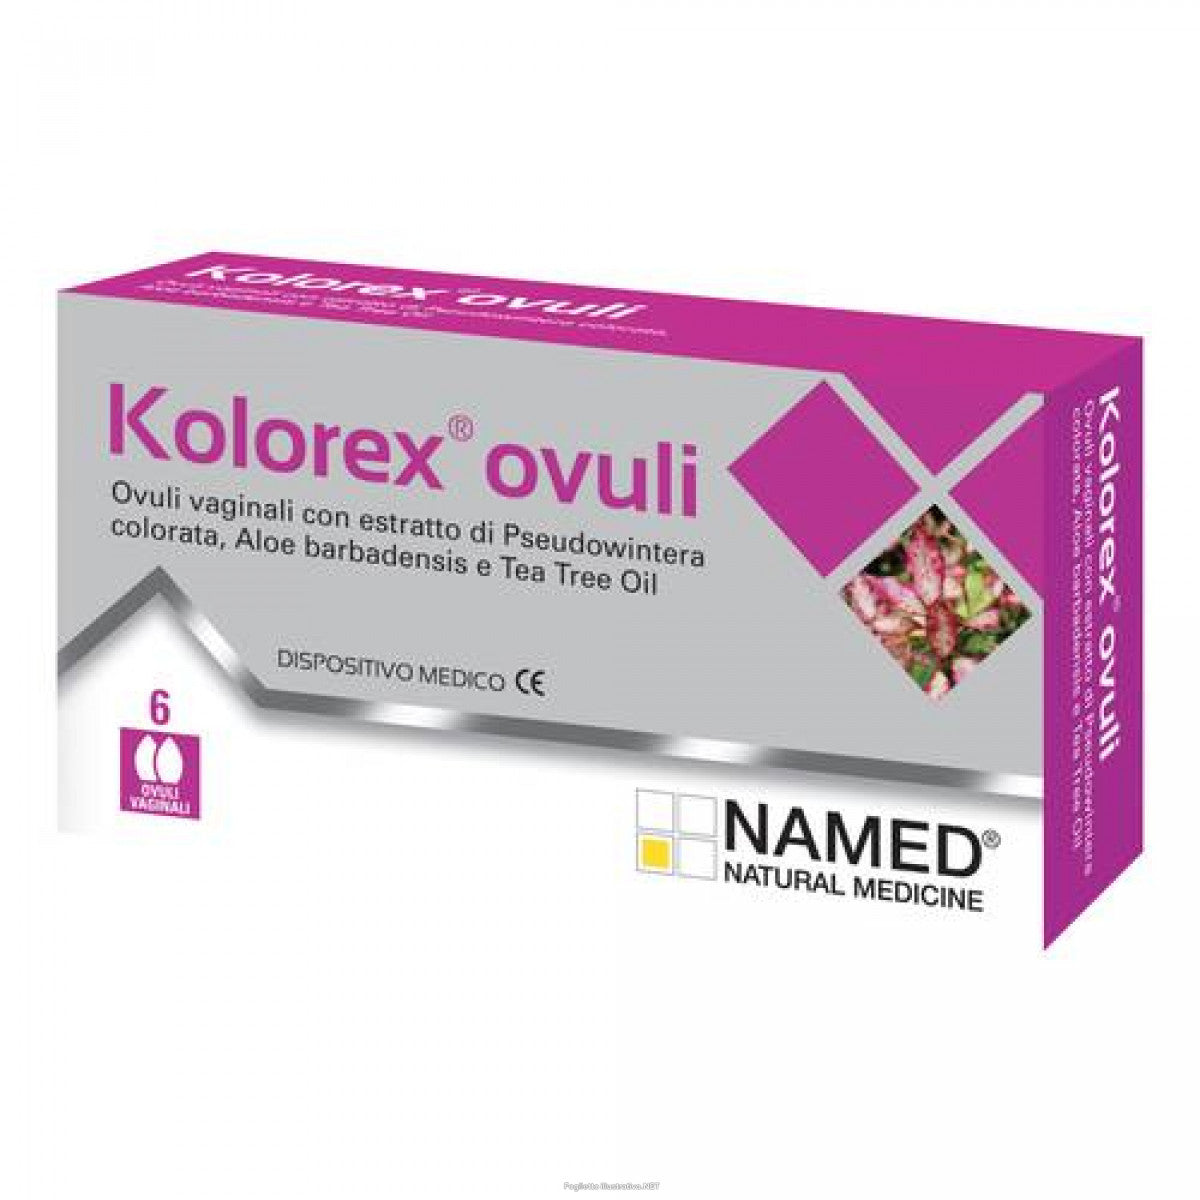 Kolorex Ovuli 6 ovuli vaginali